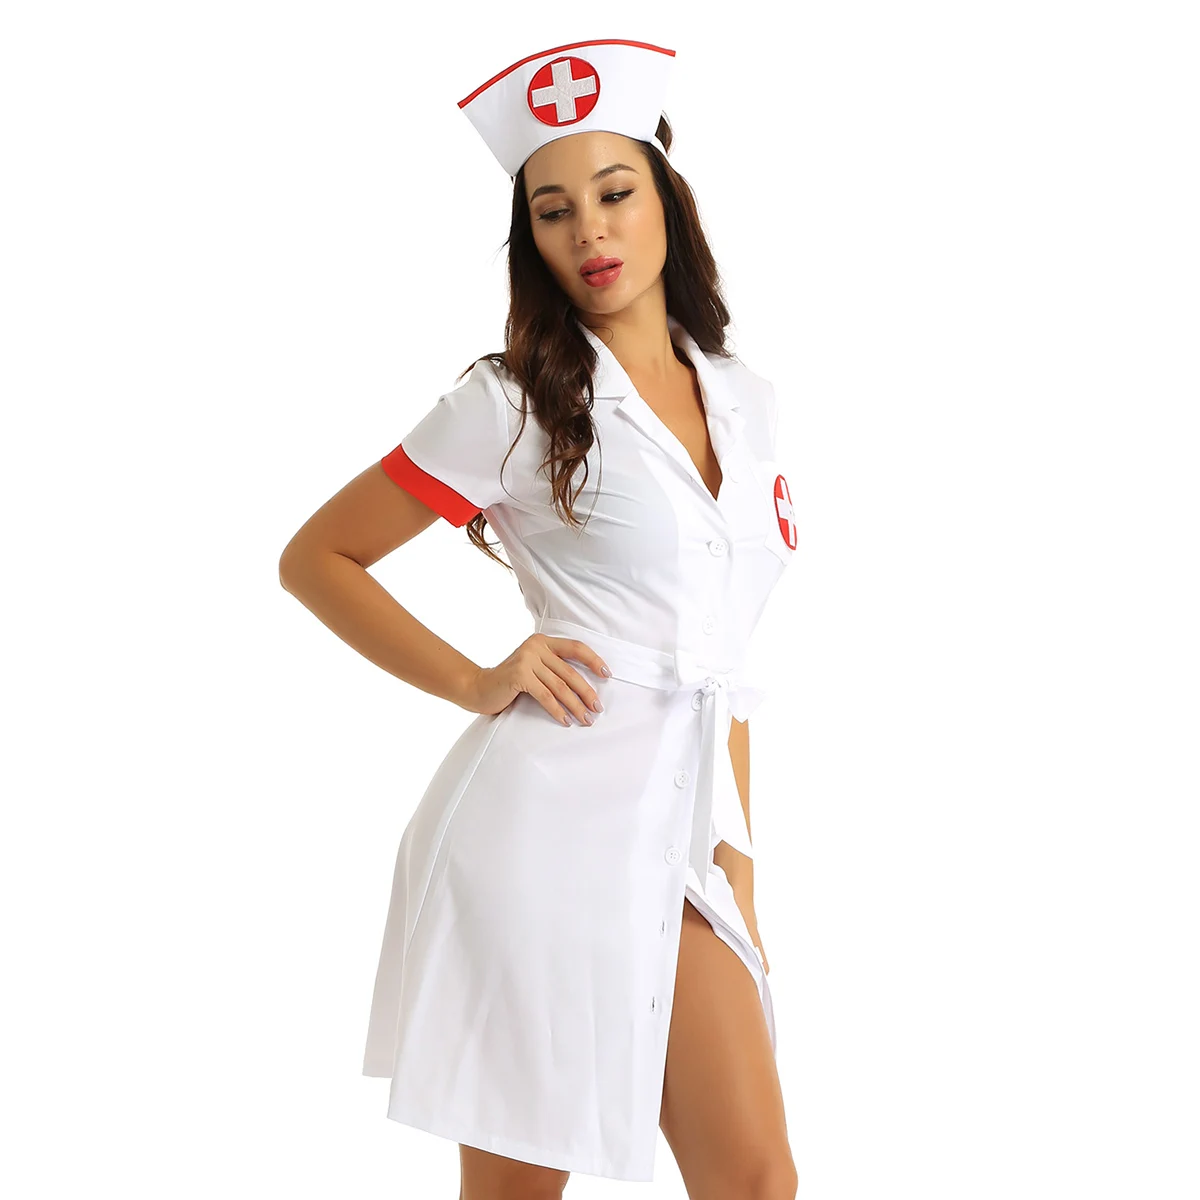 DPOIS женский халат медсестры униформа платье Взрослый медицинский сервис костюм одежда ДОКТОР халат одежда косметолога белый скрабы лабораторное пальто